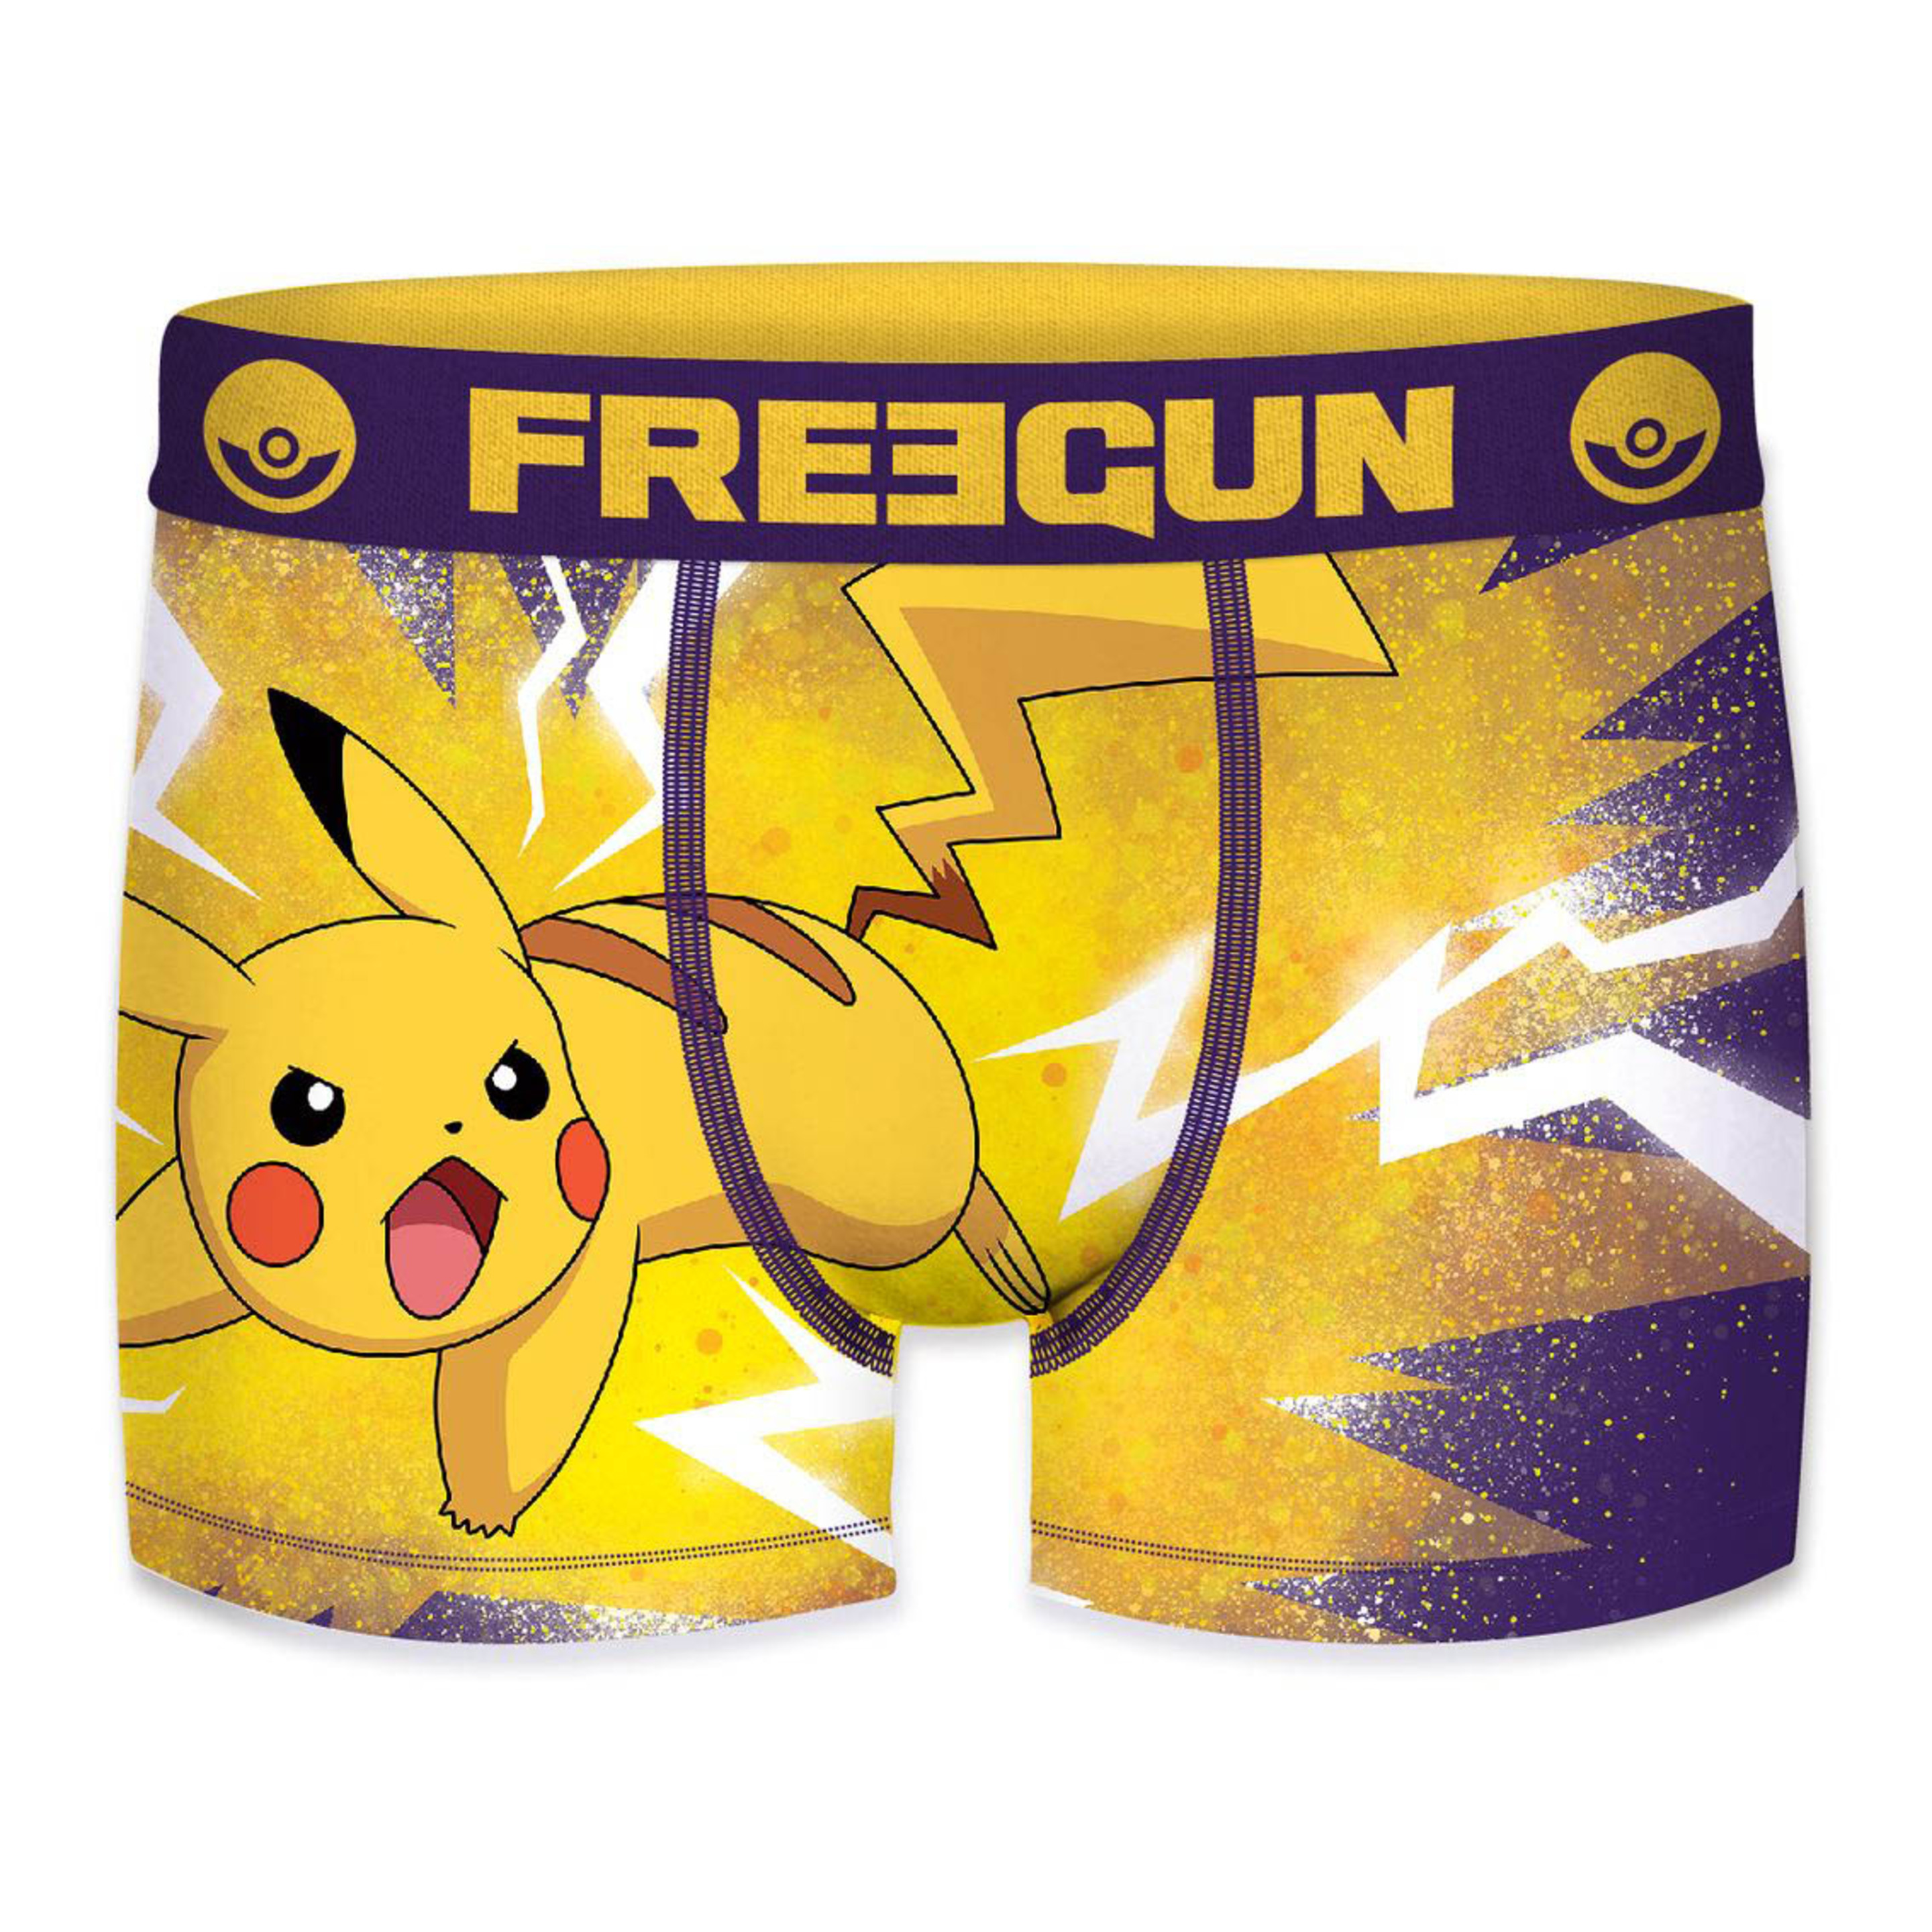 Calzoncillo Picachu Pokemon Freegun Para Niño - multicolor - 